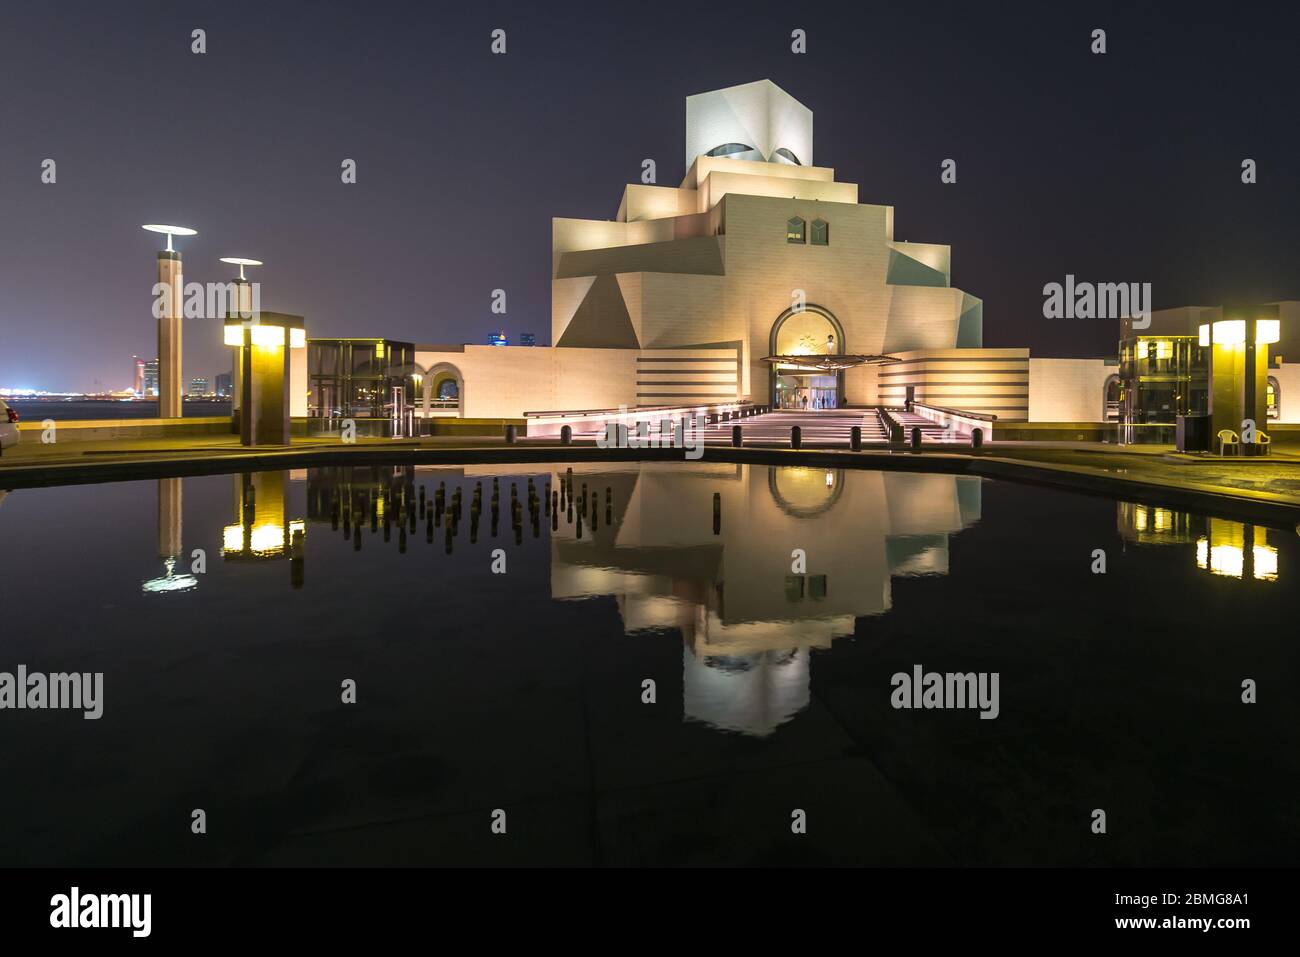 Besuch des Qatar Museum of Islamic Art in Doha Spiegelung in Wasser des Teiches in der Nacht. Futuristische Architektur in der Nähe der Bucht von Doha. Stockfoto